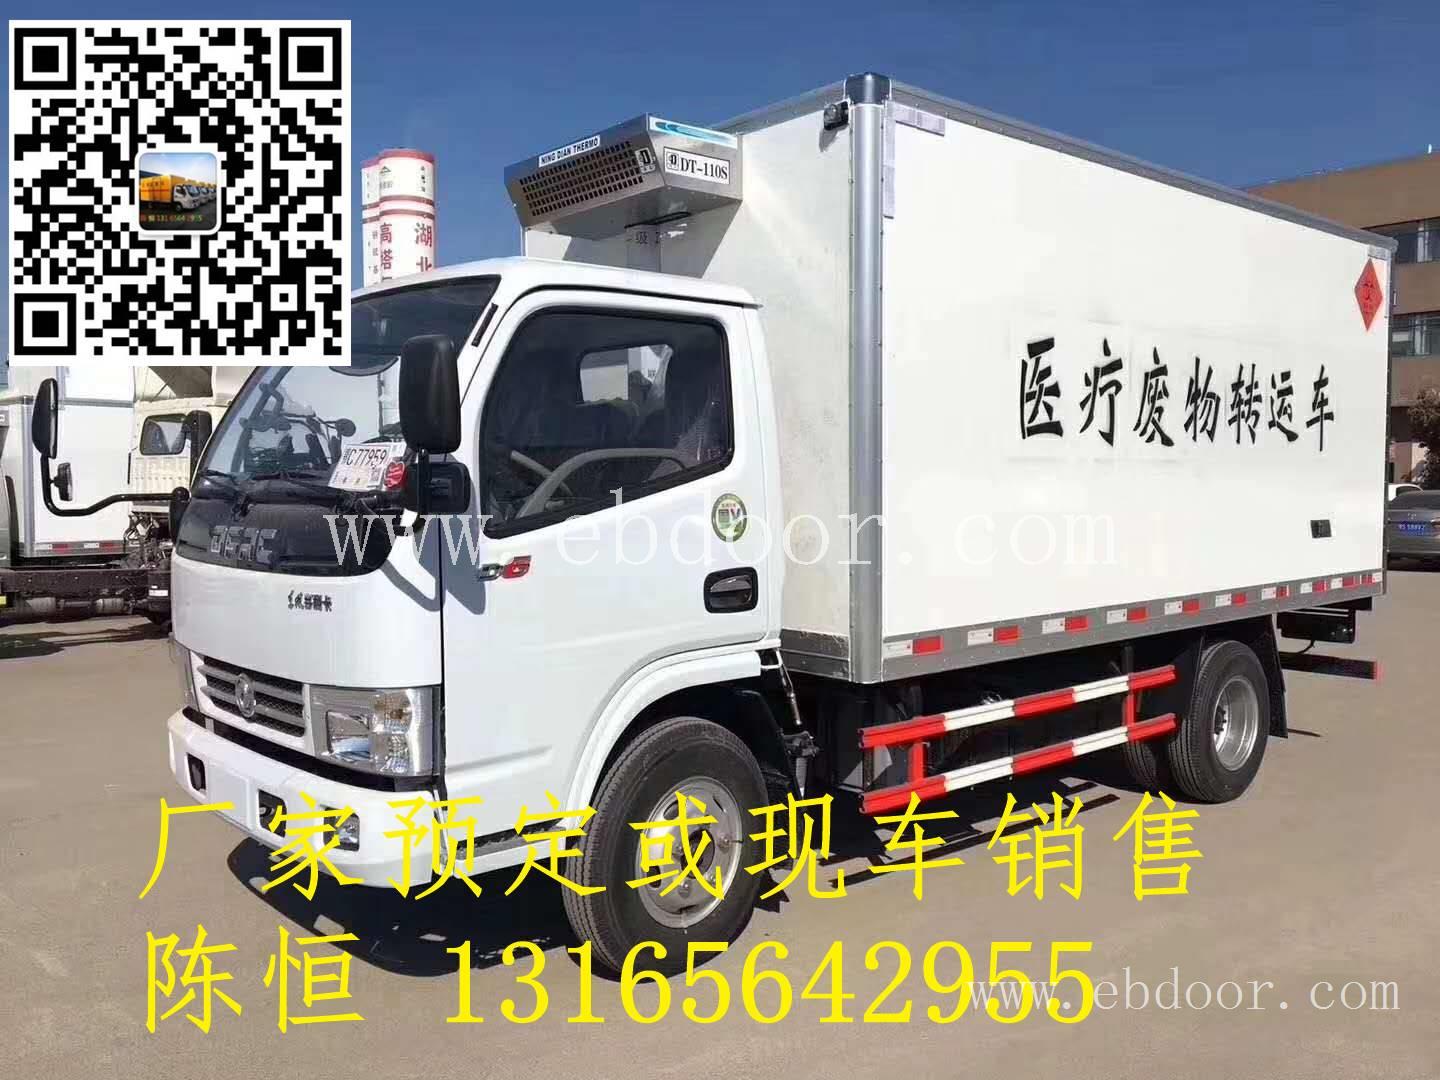 河南郑州 东风多利卡医疗废物转运车 优于同排量车型